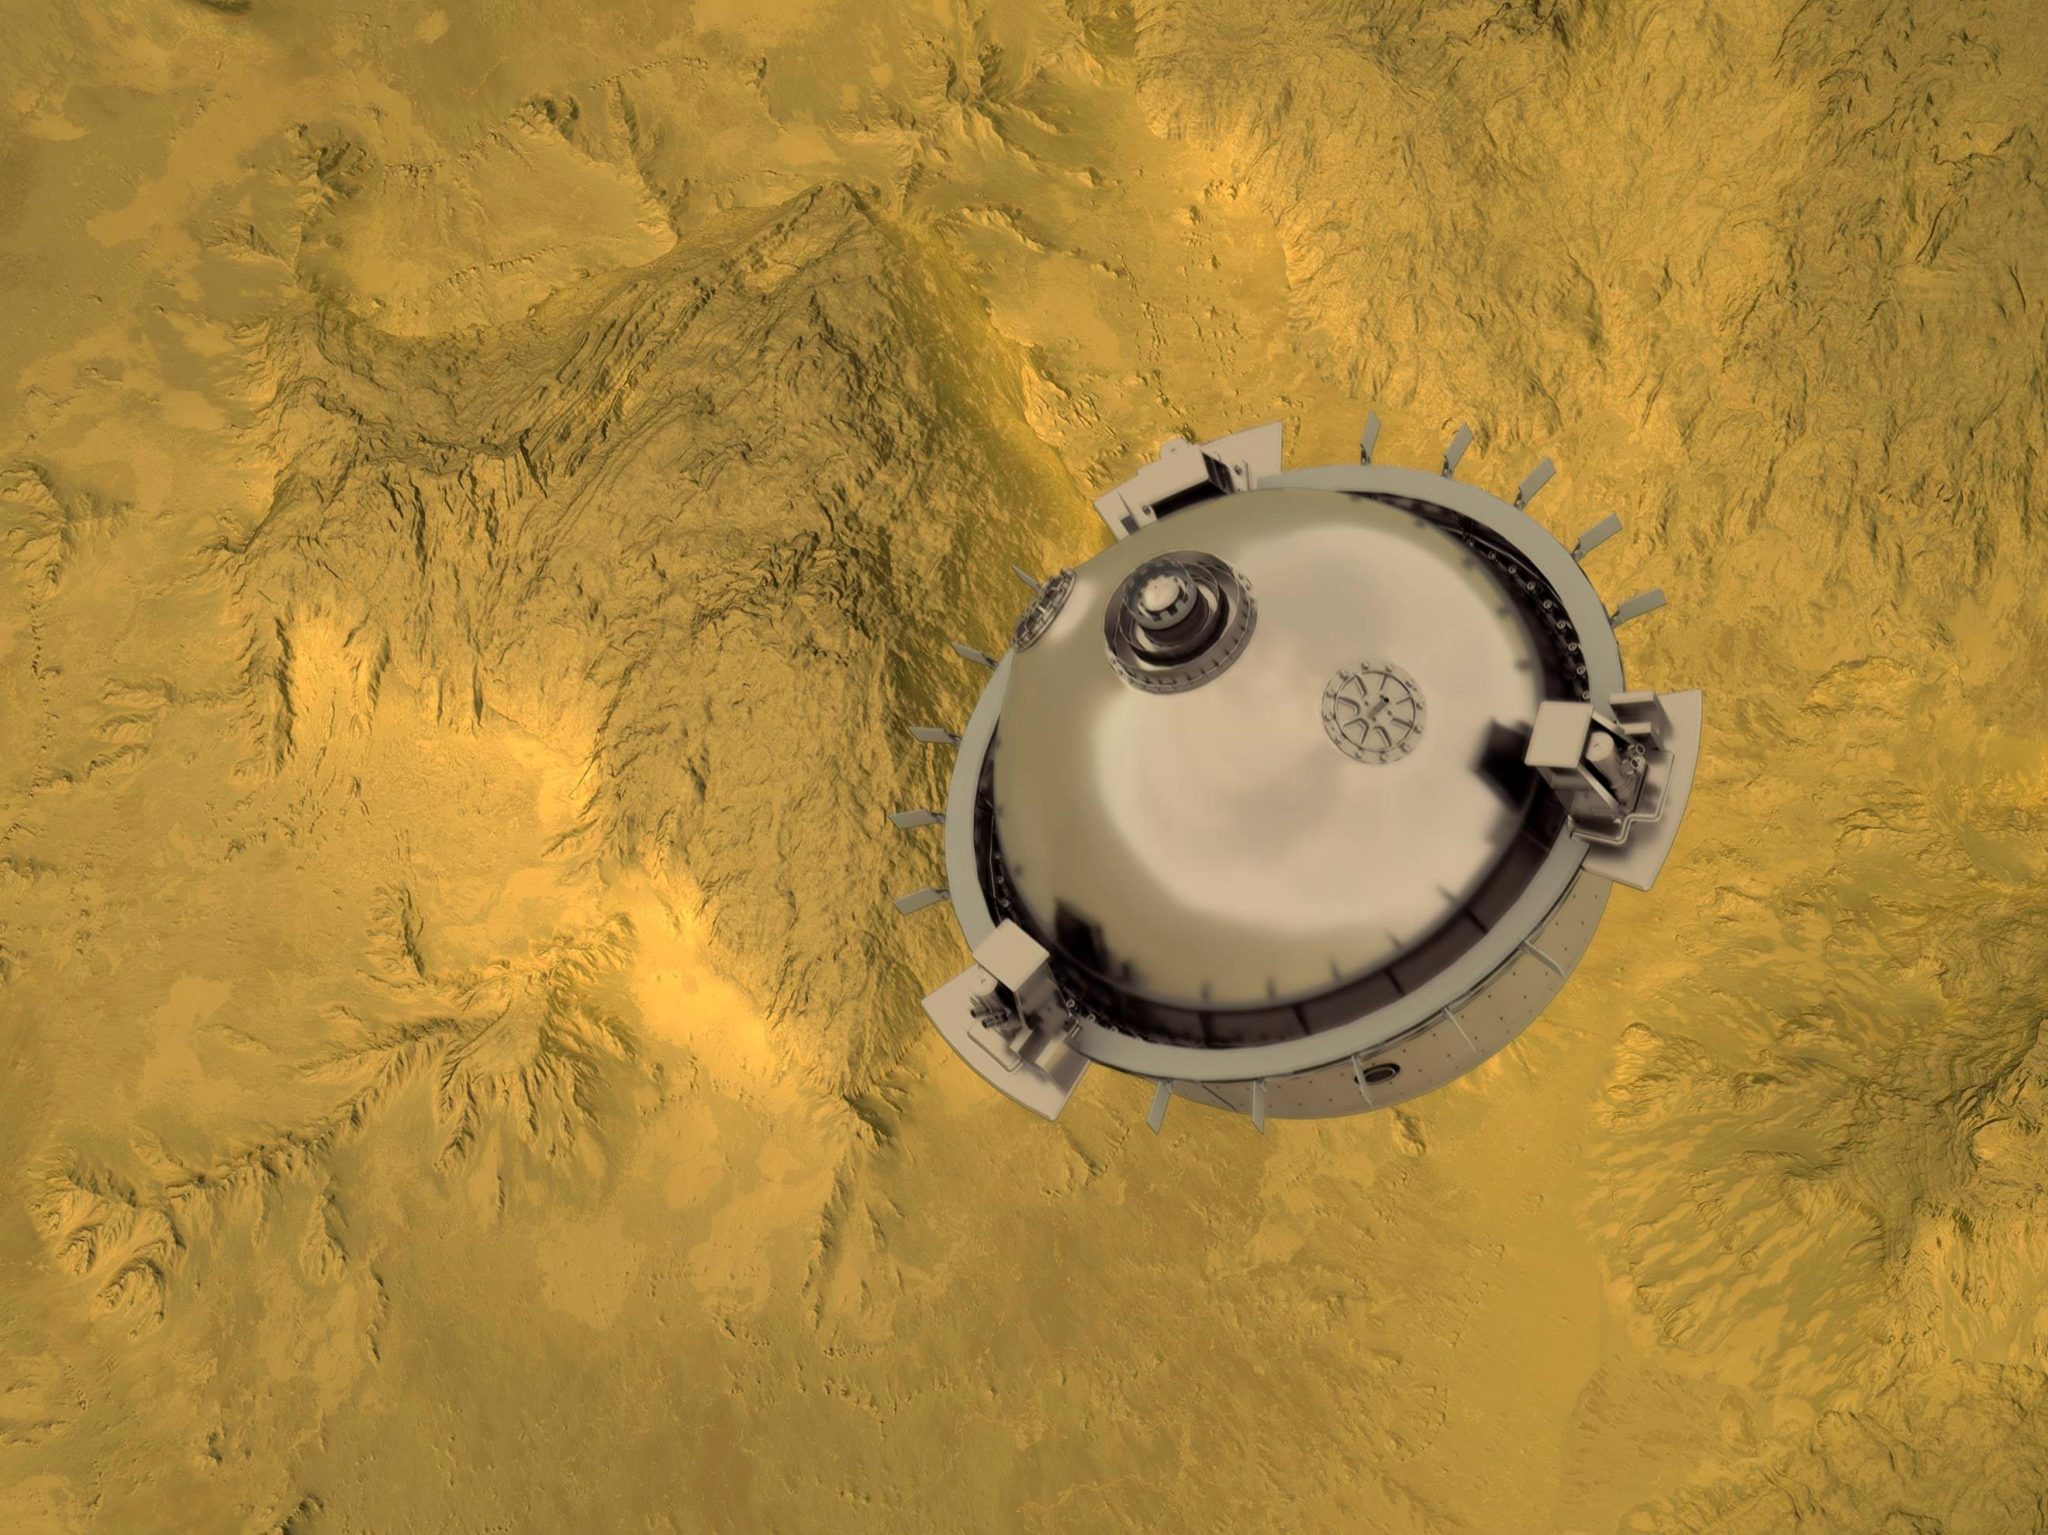 Зонд DAVINCI у поверхности Венеры